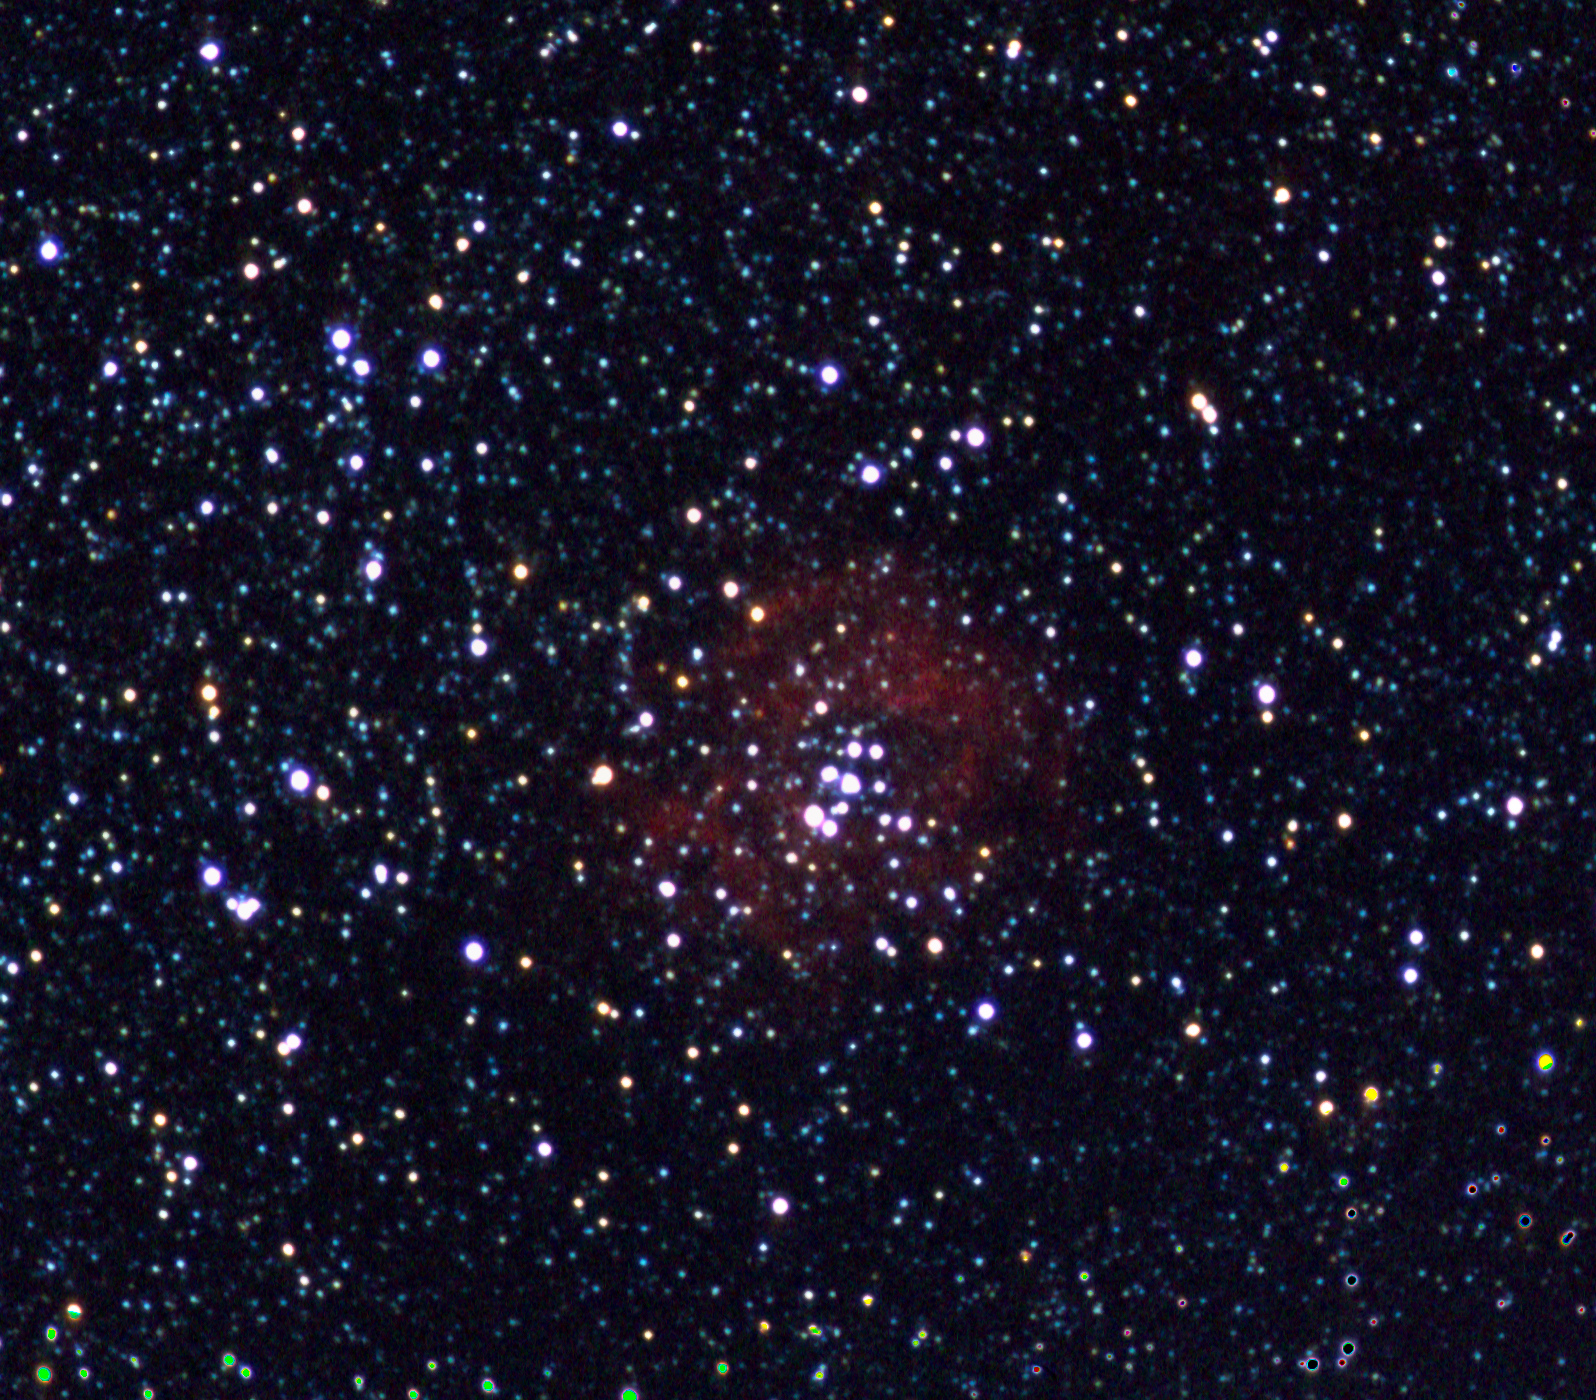 A593_NGC2244Rosette_Tele200_gimp.jpg.26d3b1f5aff815c6500747d81bc78248.jpg